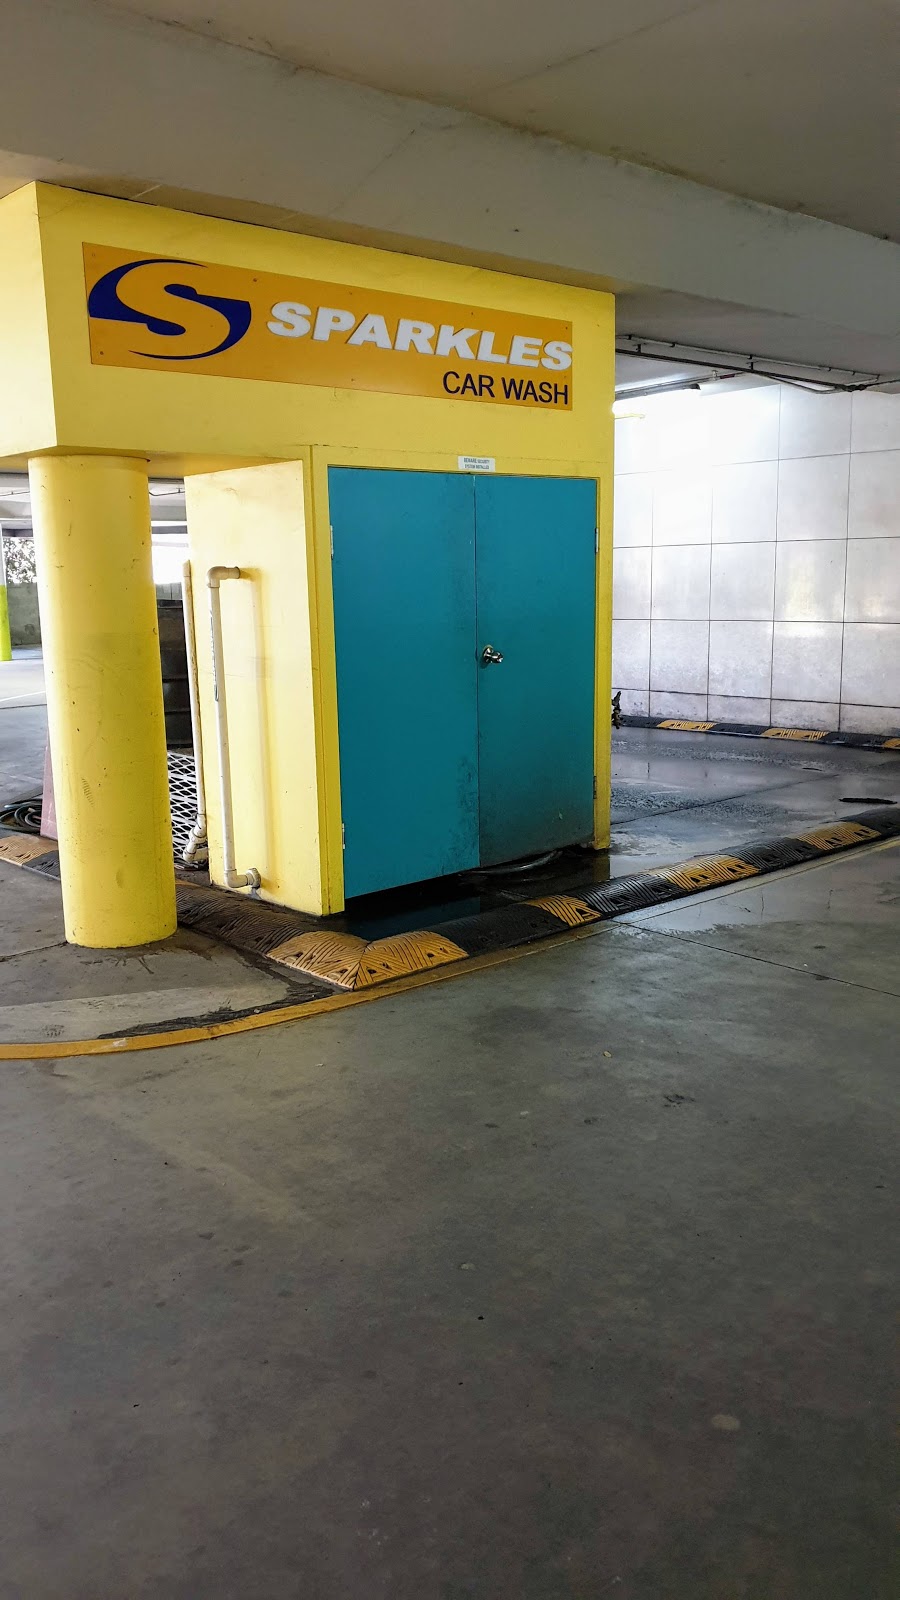 Sparkles Car Wash | car wash | 10-12 Lae Dr, Runaway Bay QLD 4216, Australia | 0404224662 OR +61 404 224 662